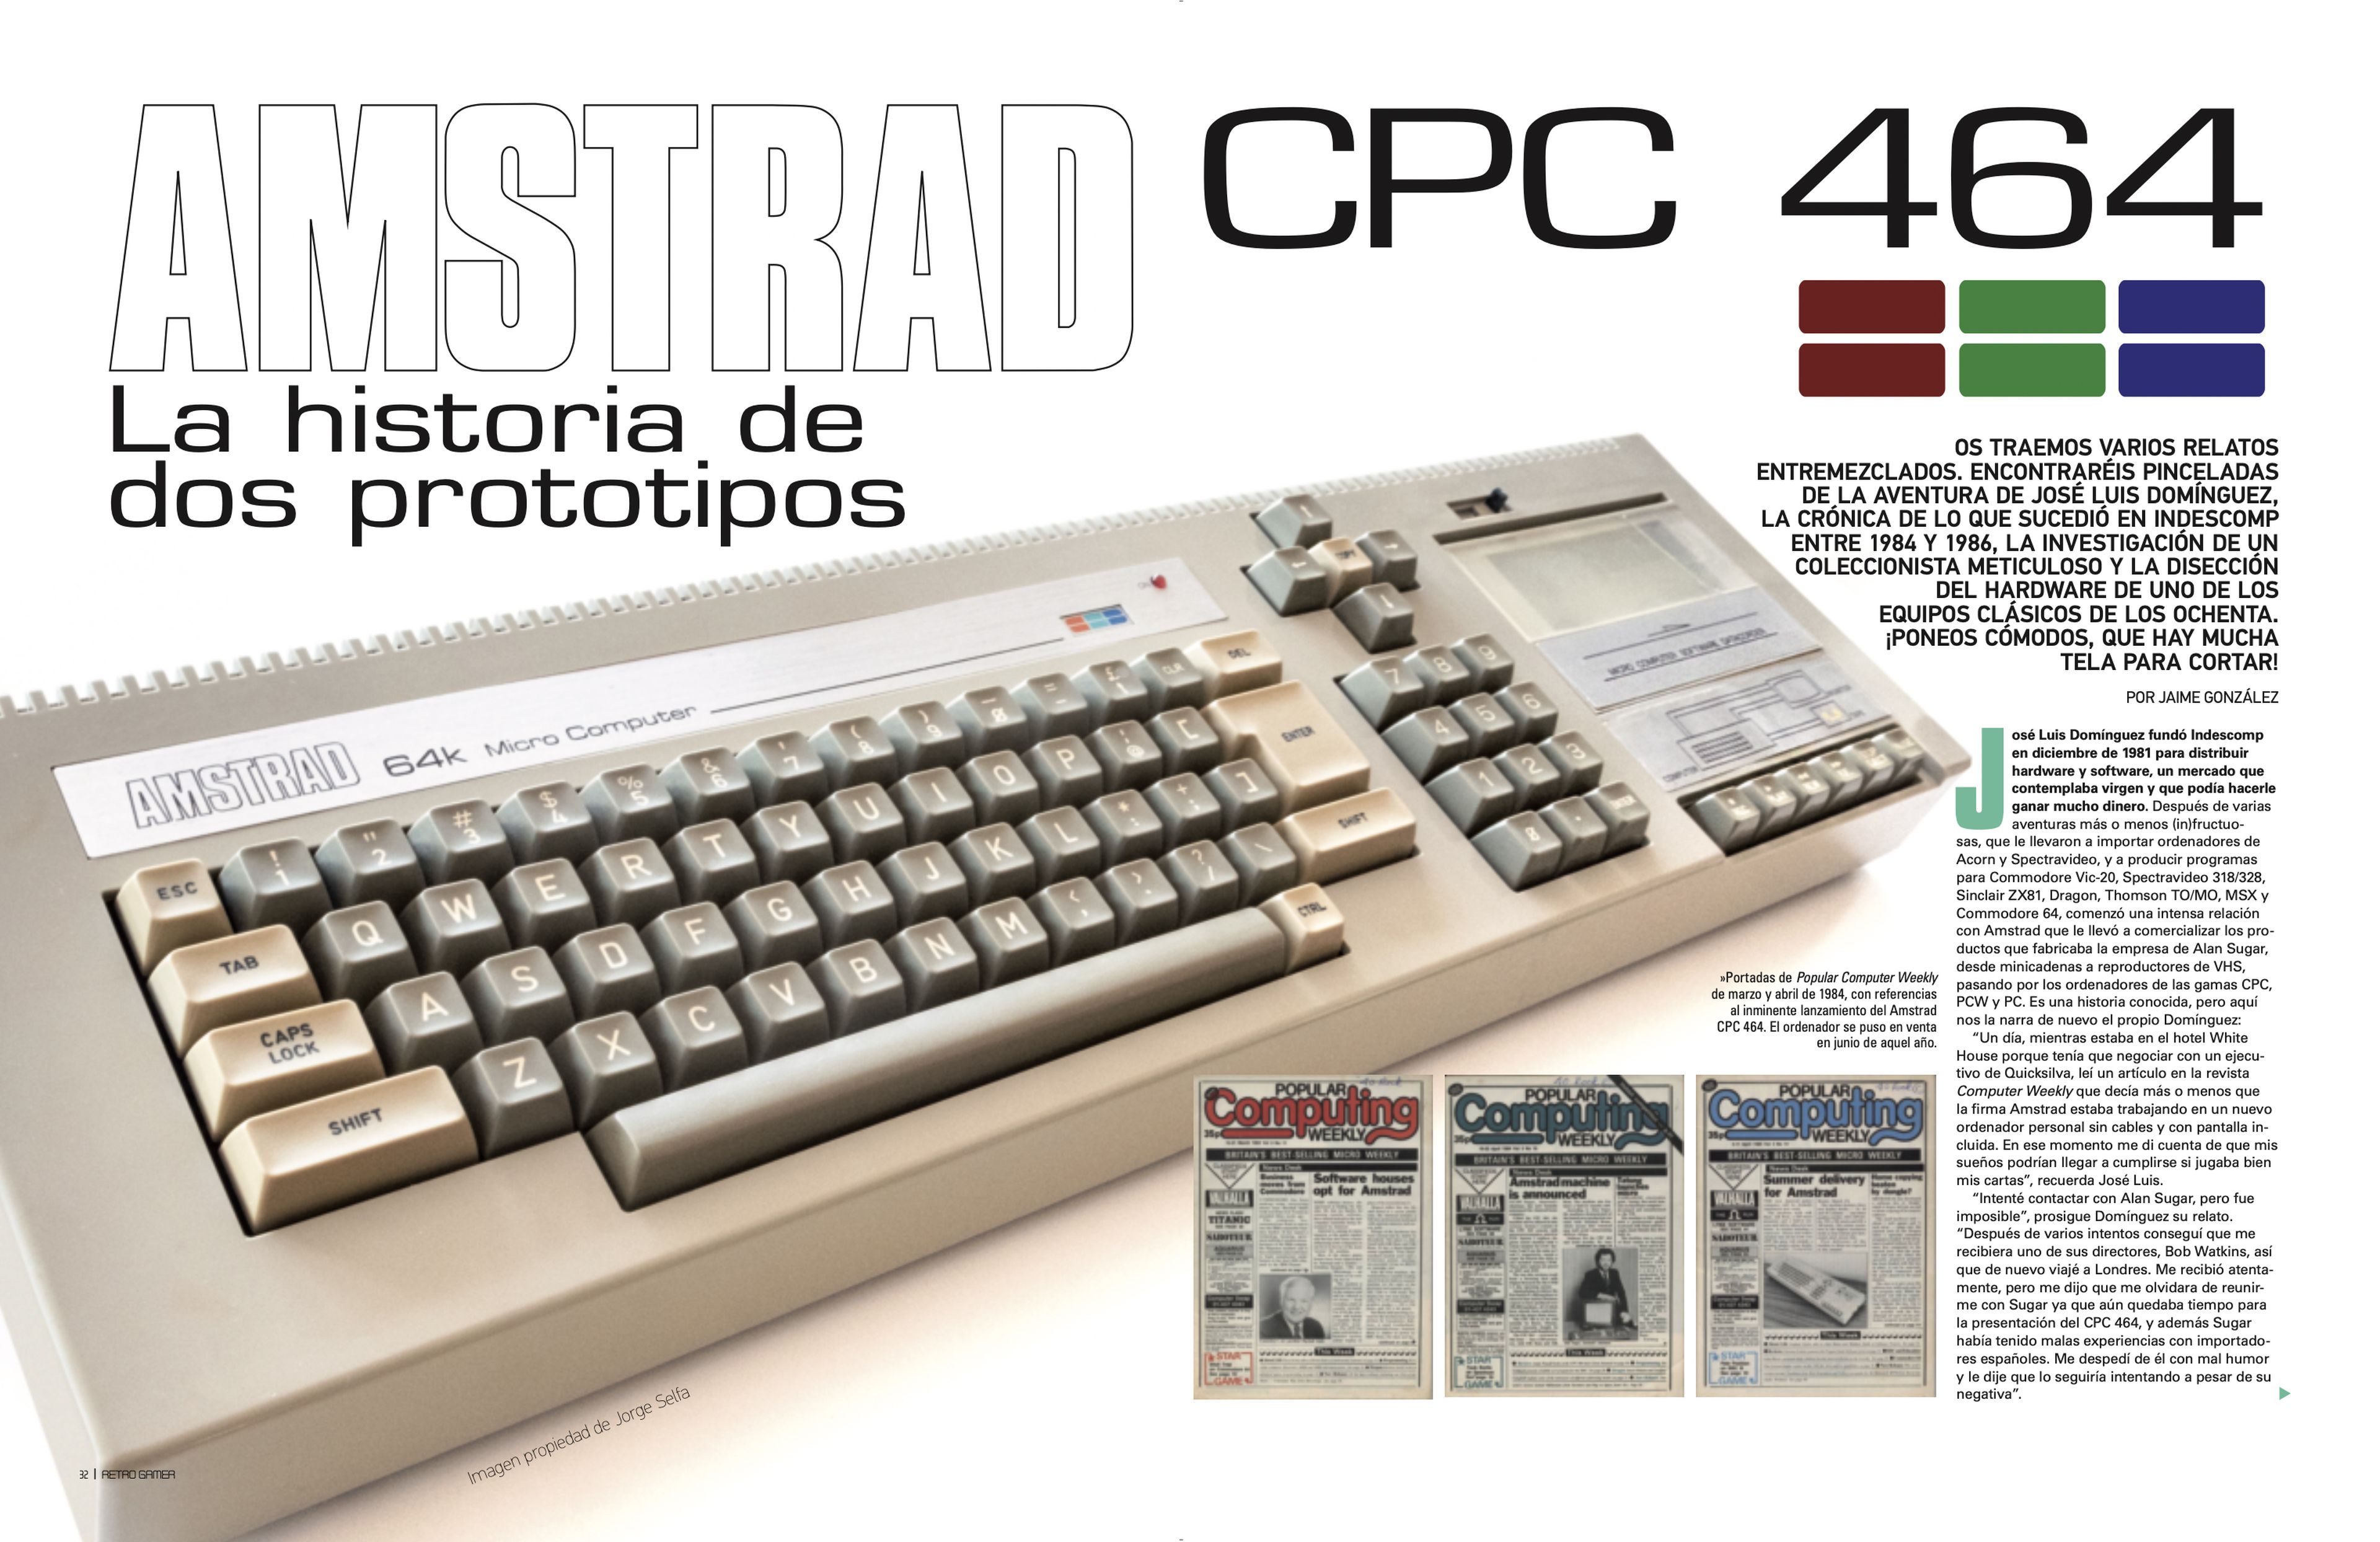 Retro Gamer 39: prototipo que dio origen al CPC 464